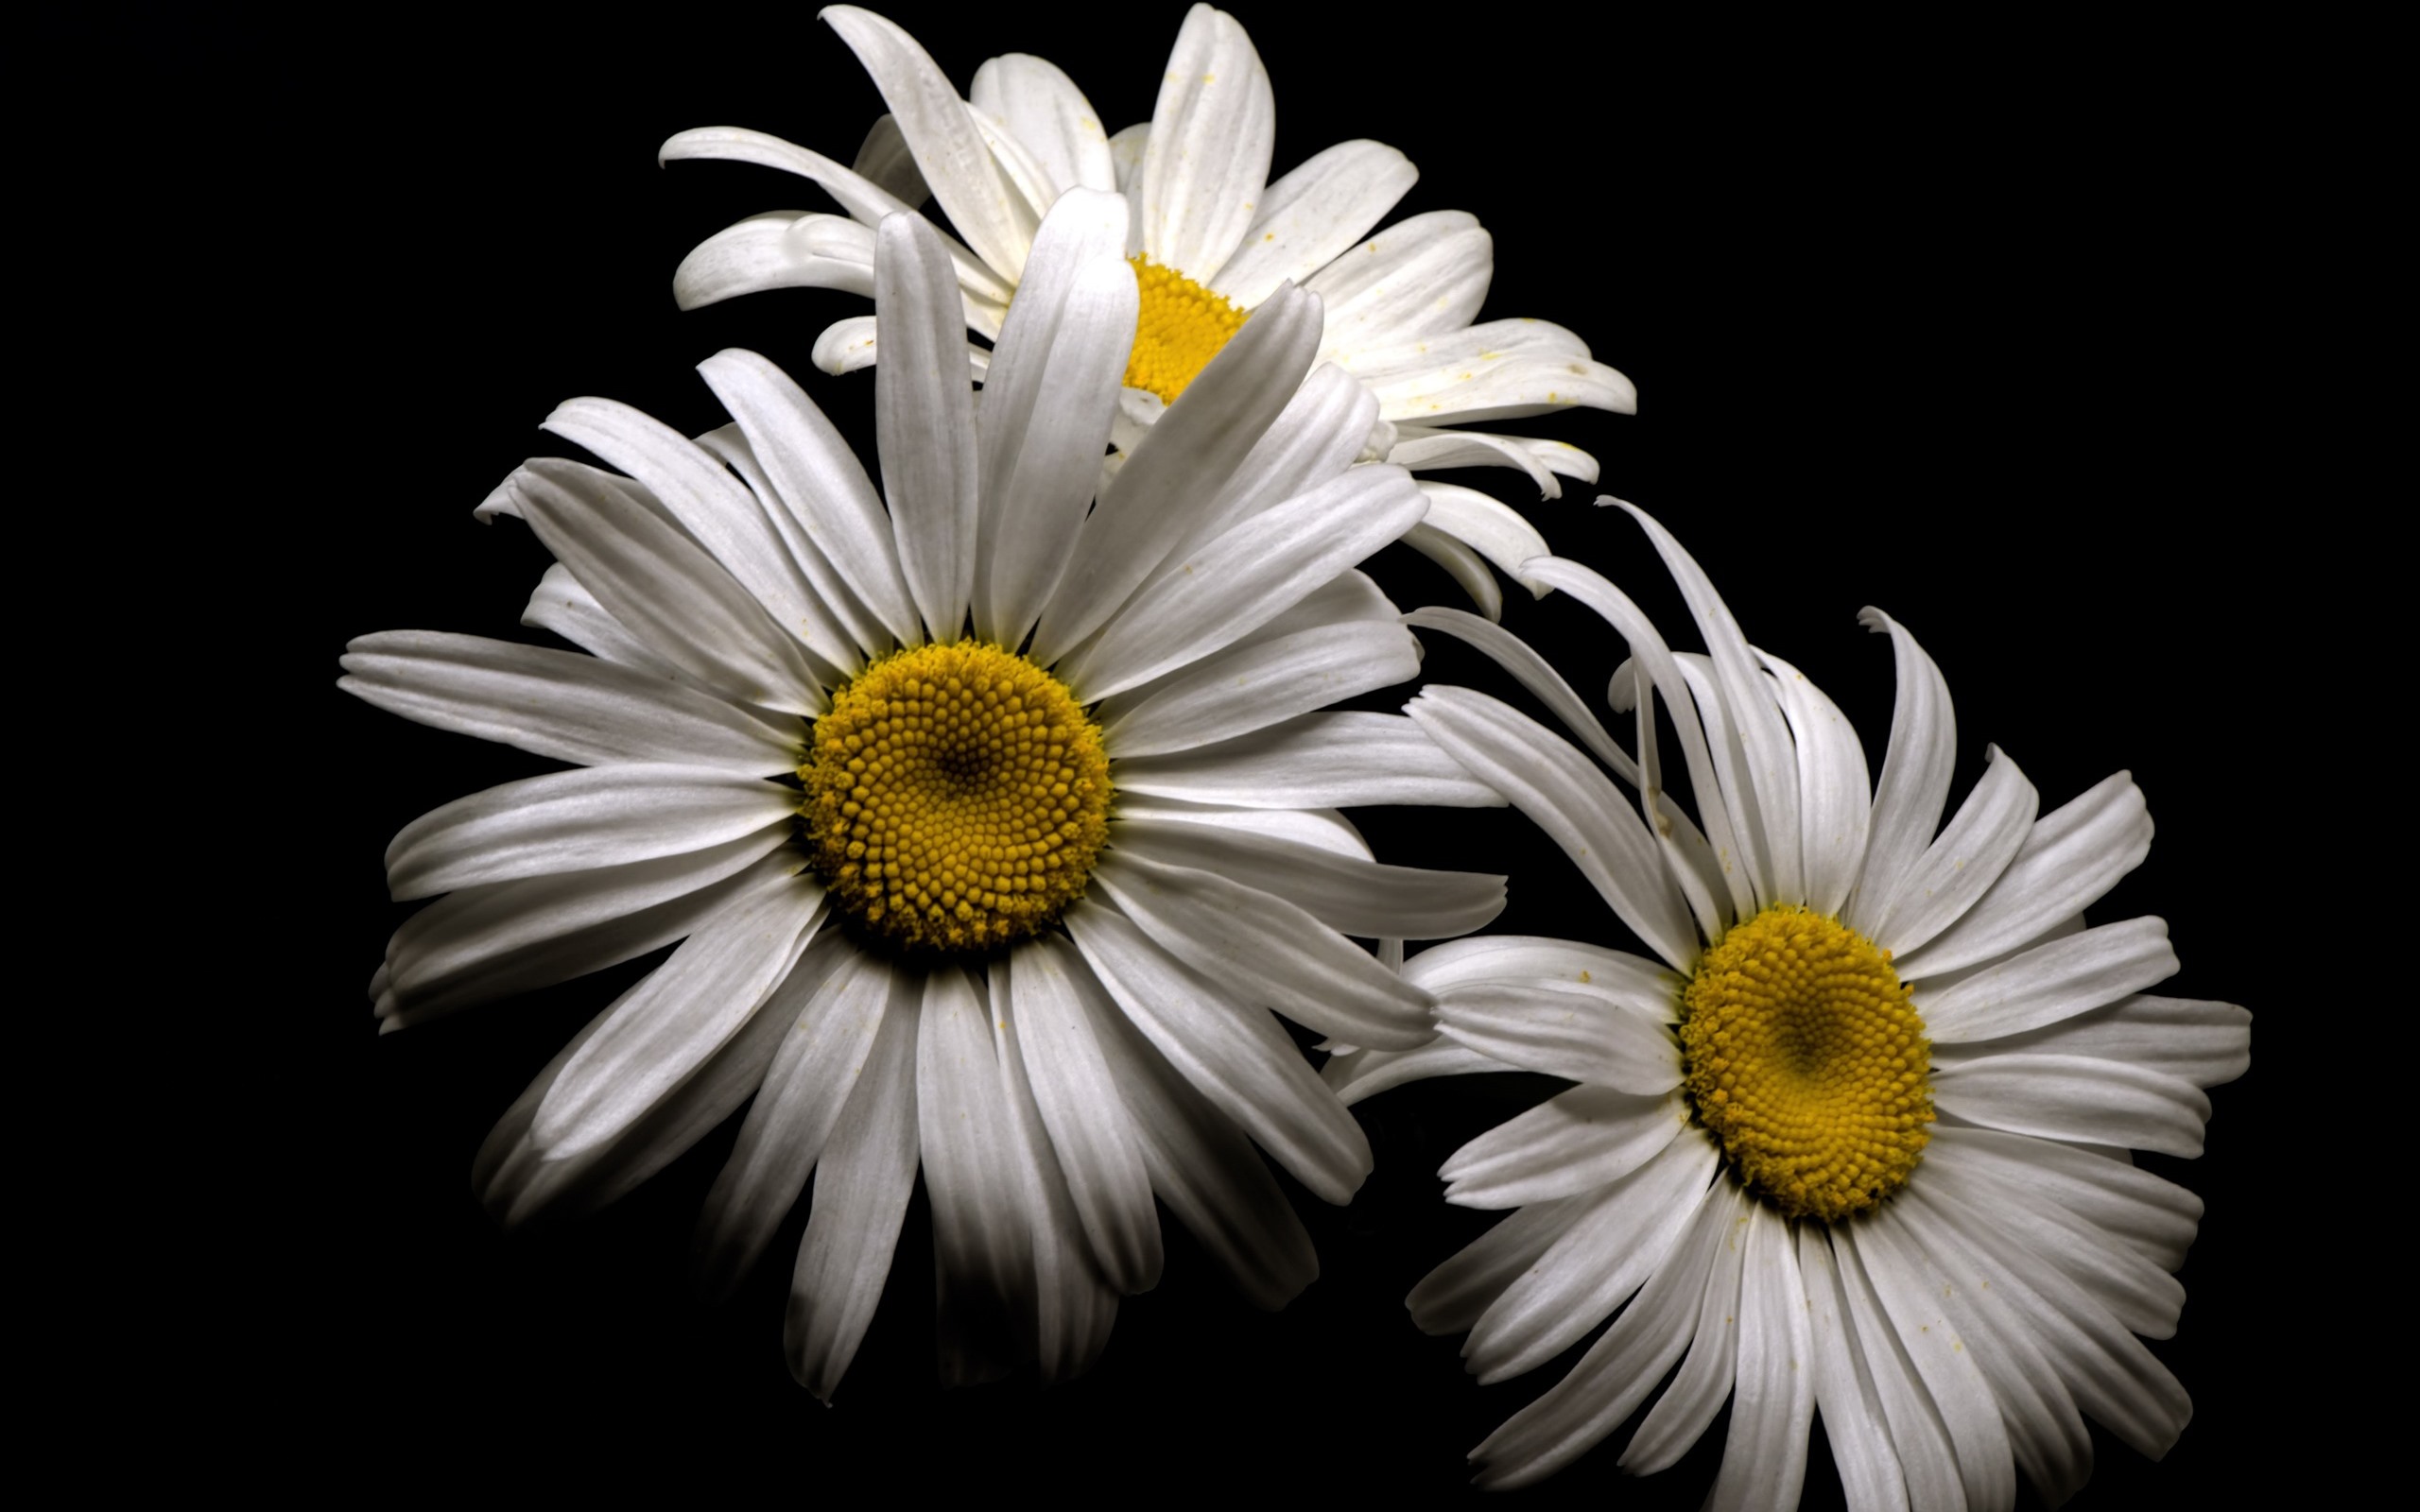 Hình ảnh hoa cúc trắng nền đen chất lượng cao